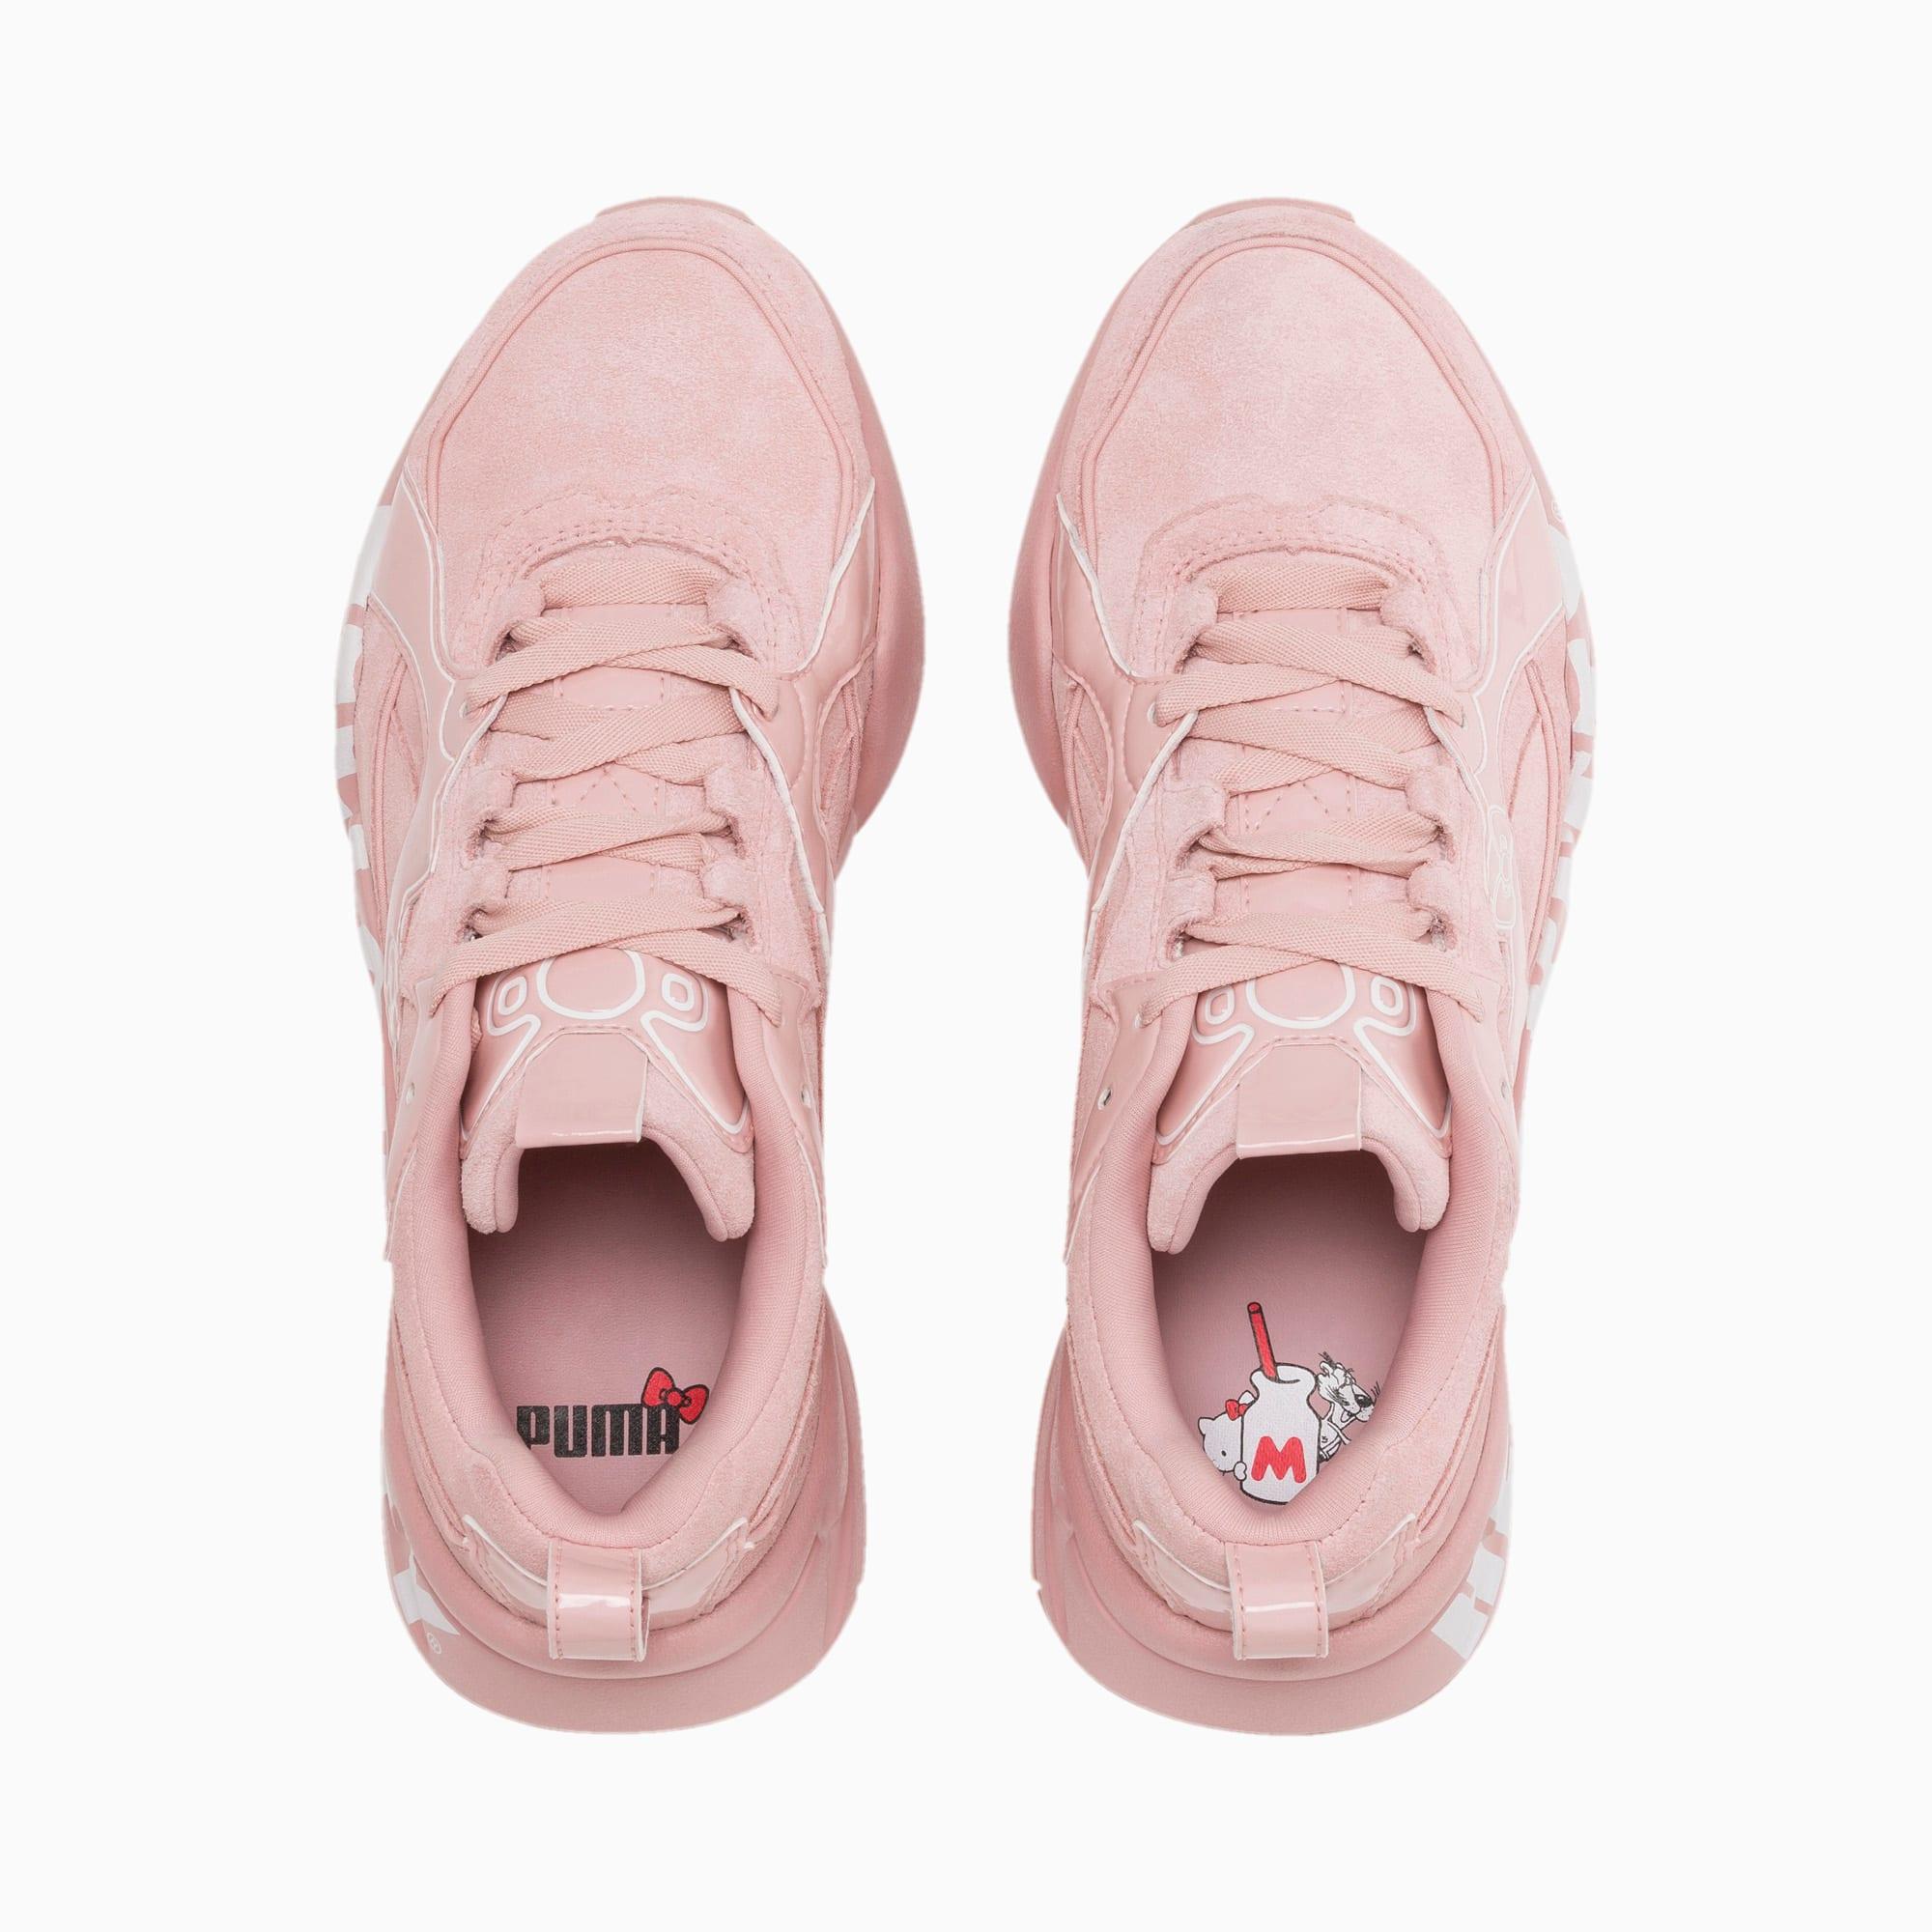 PUMA Suede X Hello Kitty Nova 2 Women's Sneakers in Pink | Lyst